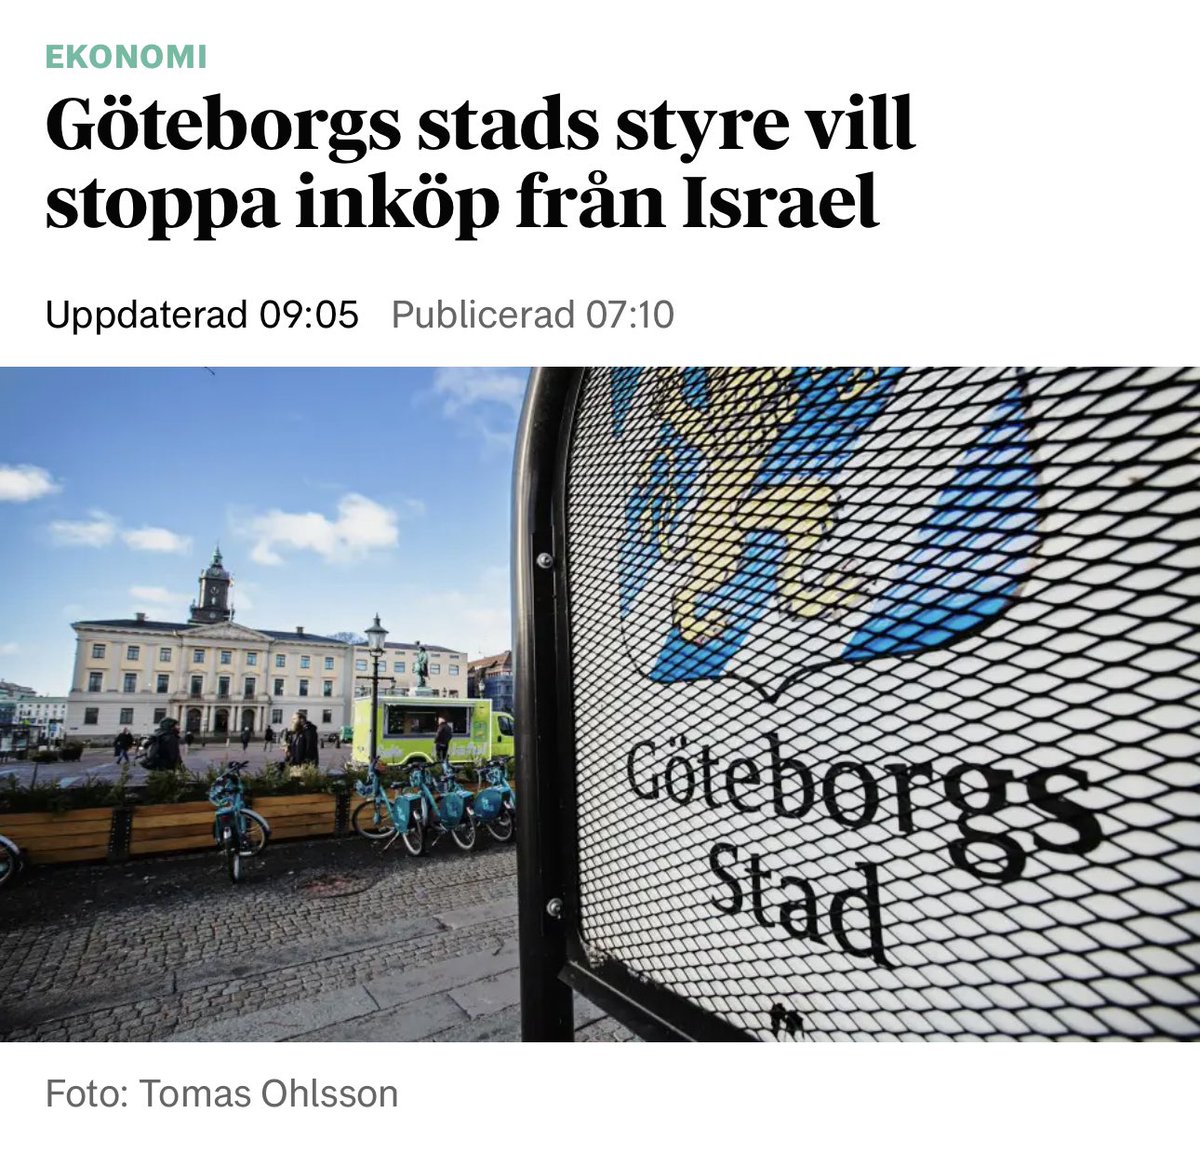 Göteborg har fallit. Orsak: Dess sinnessjuka vänsterblivna styre. #svpol #migpol